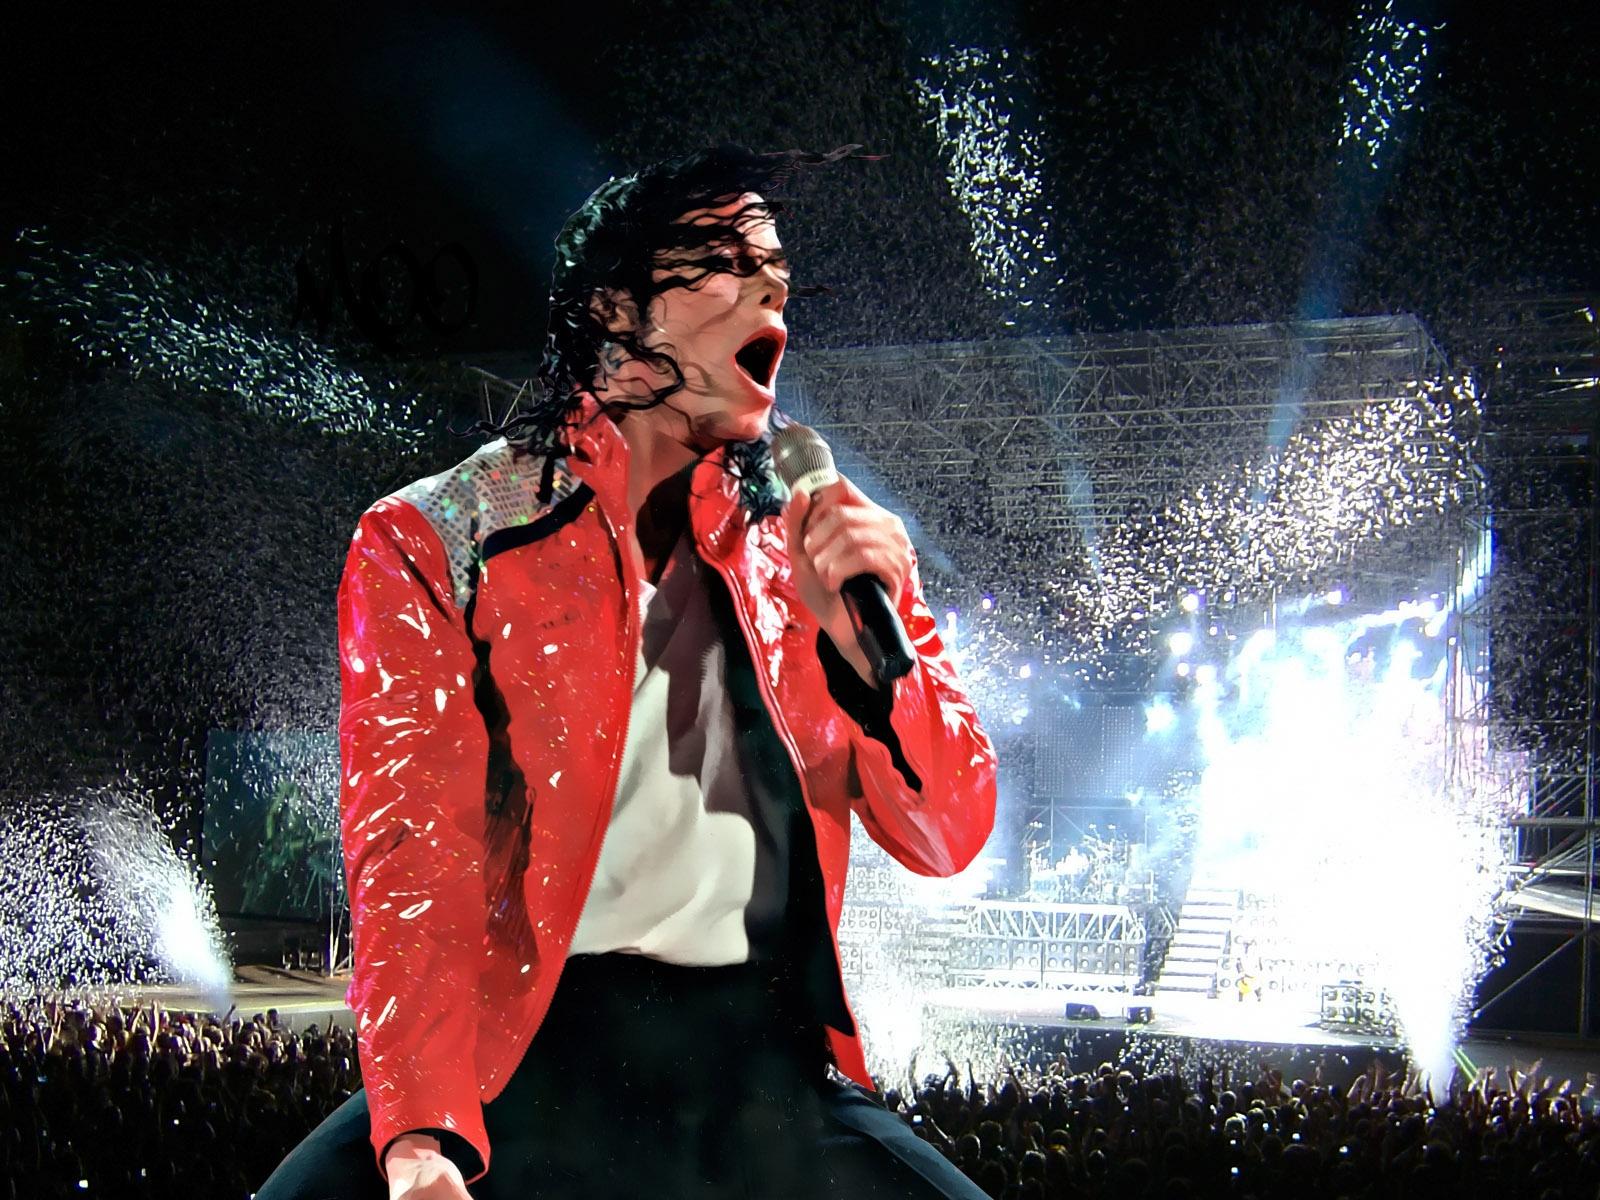 Fondos de Pantalla Michael Jackson Música descargar imagenes